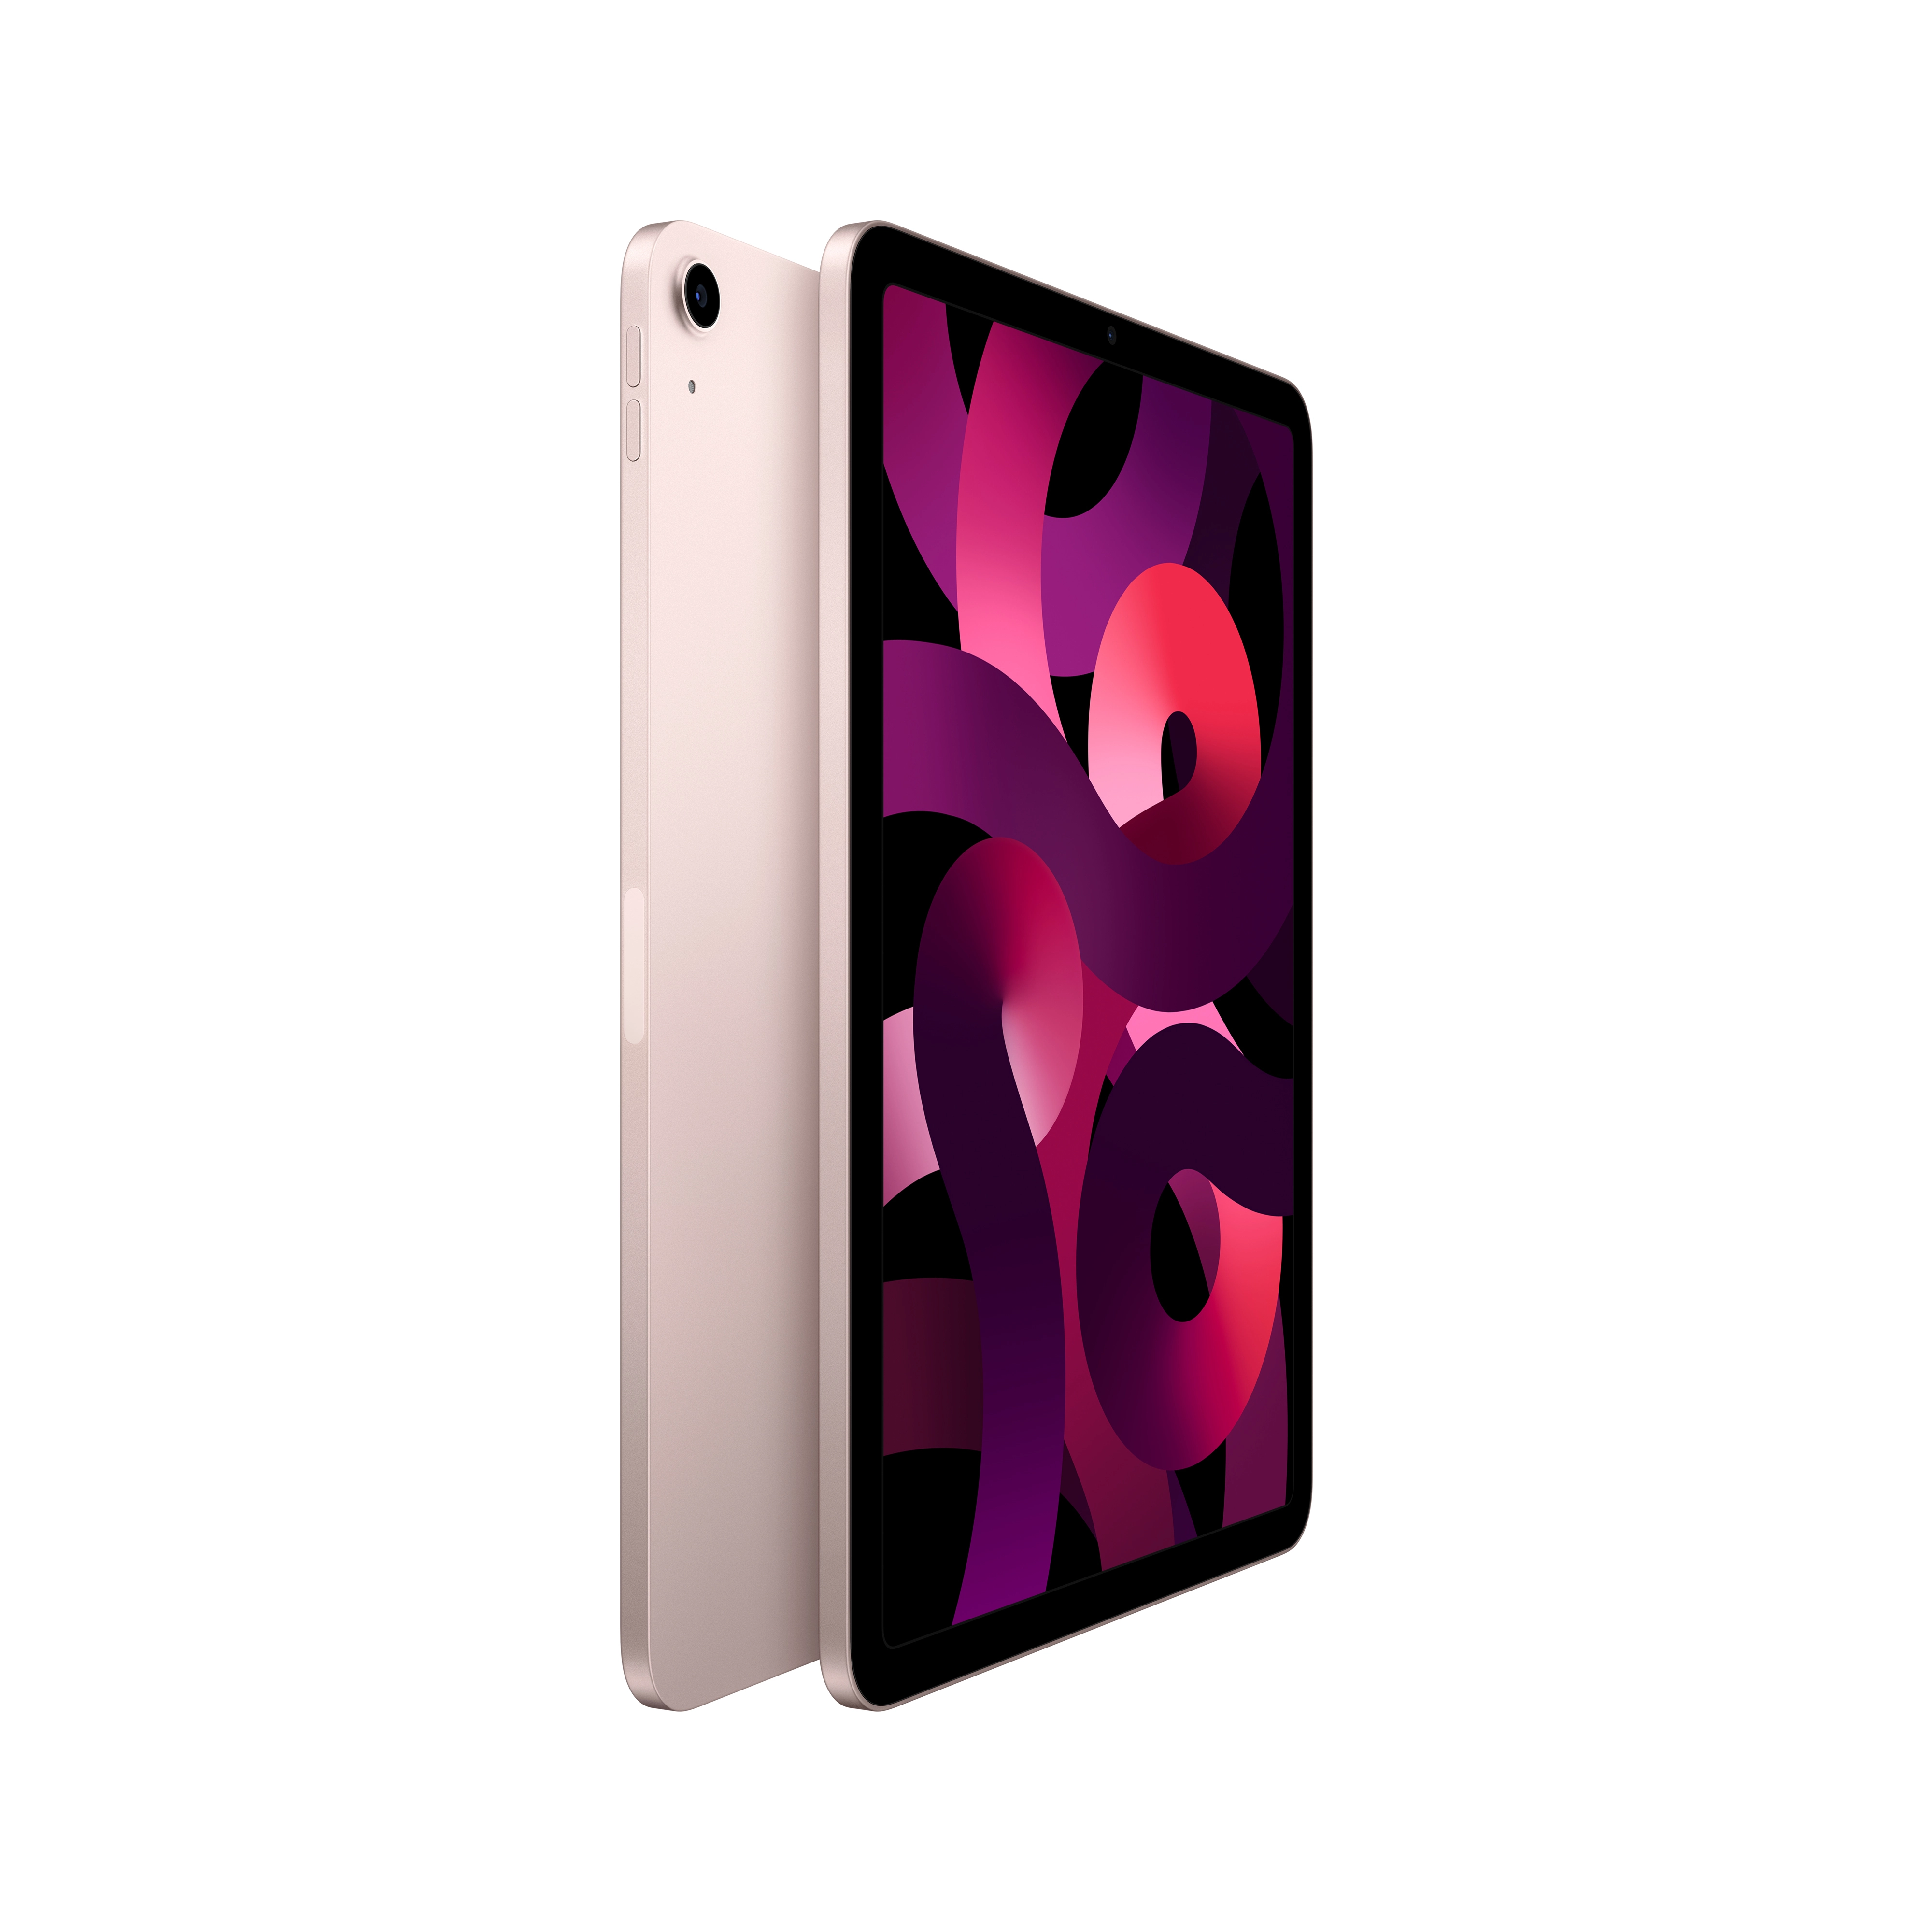 Apple iPad Air Wi-Fi 64 GB Pink - 10,9" Tablet